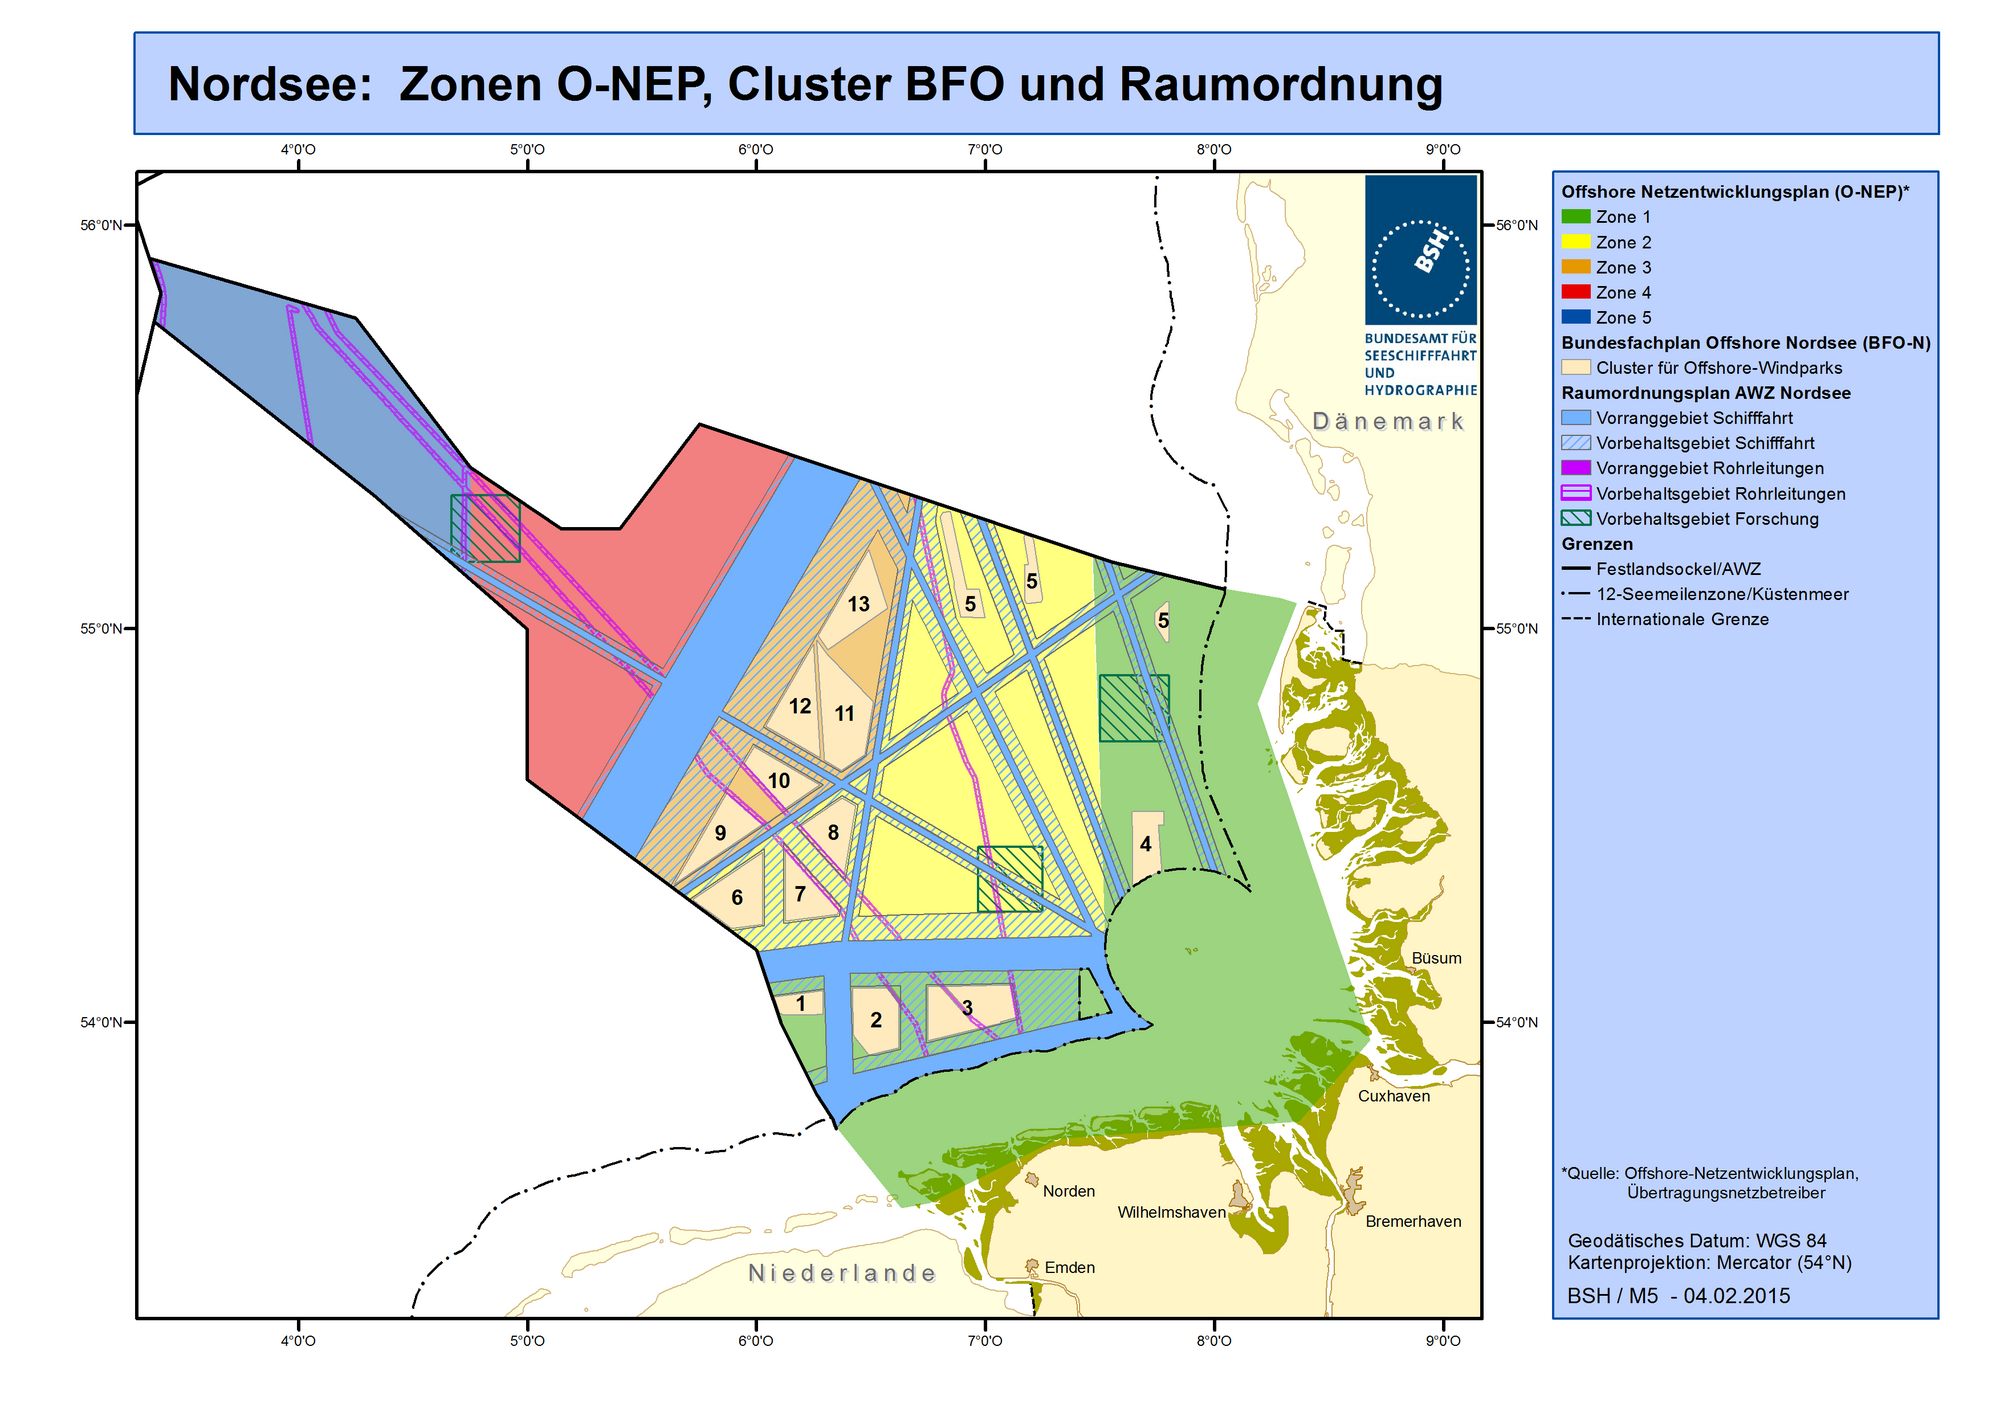 Farblich unterteilte 5 Zonen des Netzentwicklungsplans. Die erste Zone an der Küste ist grün.